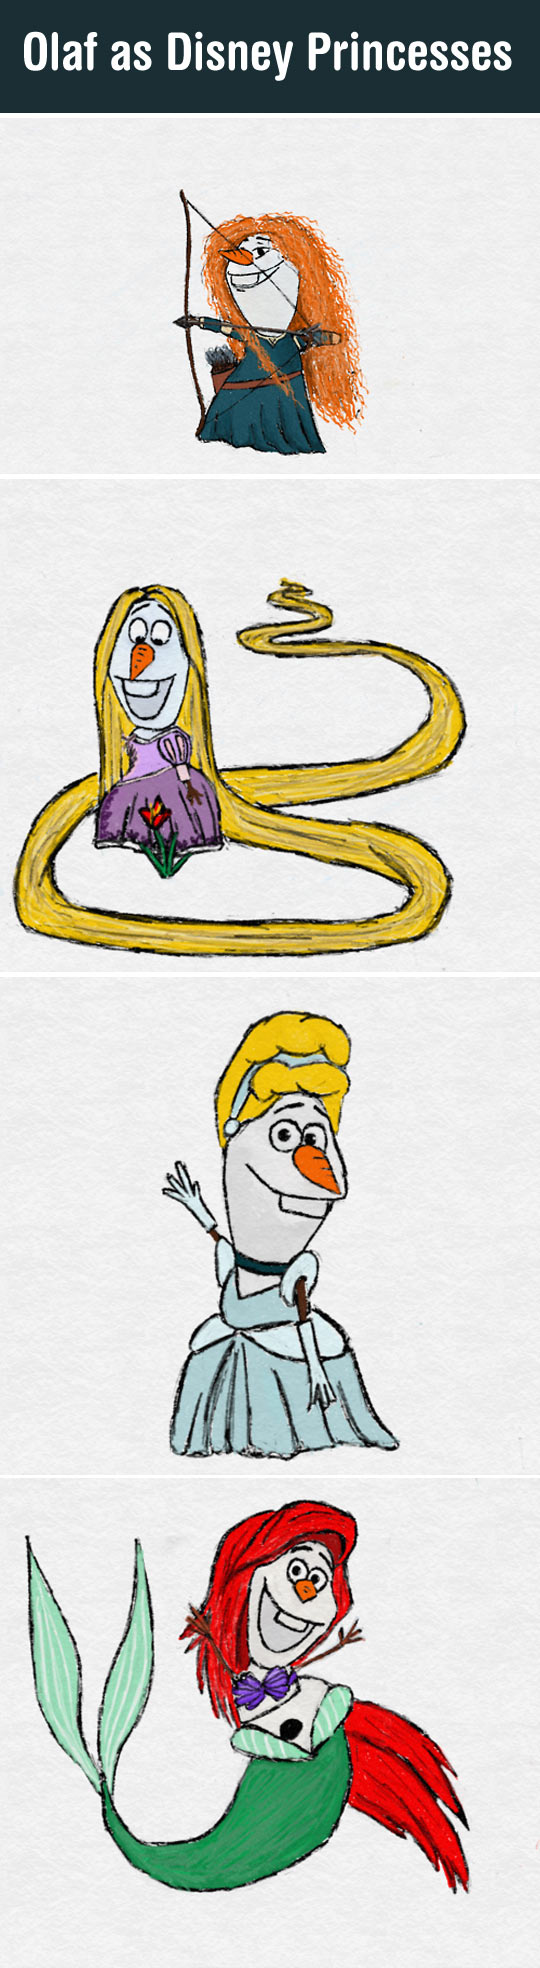 If Olaf Was a Disney Princess